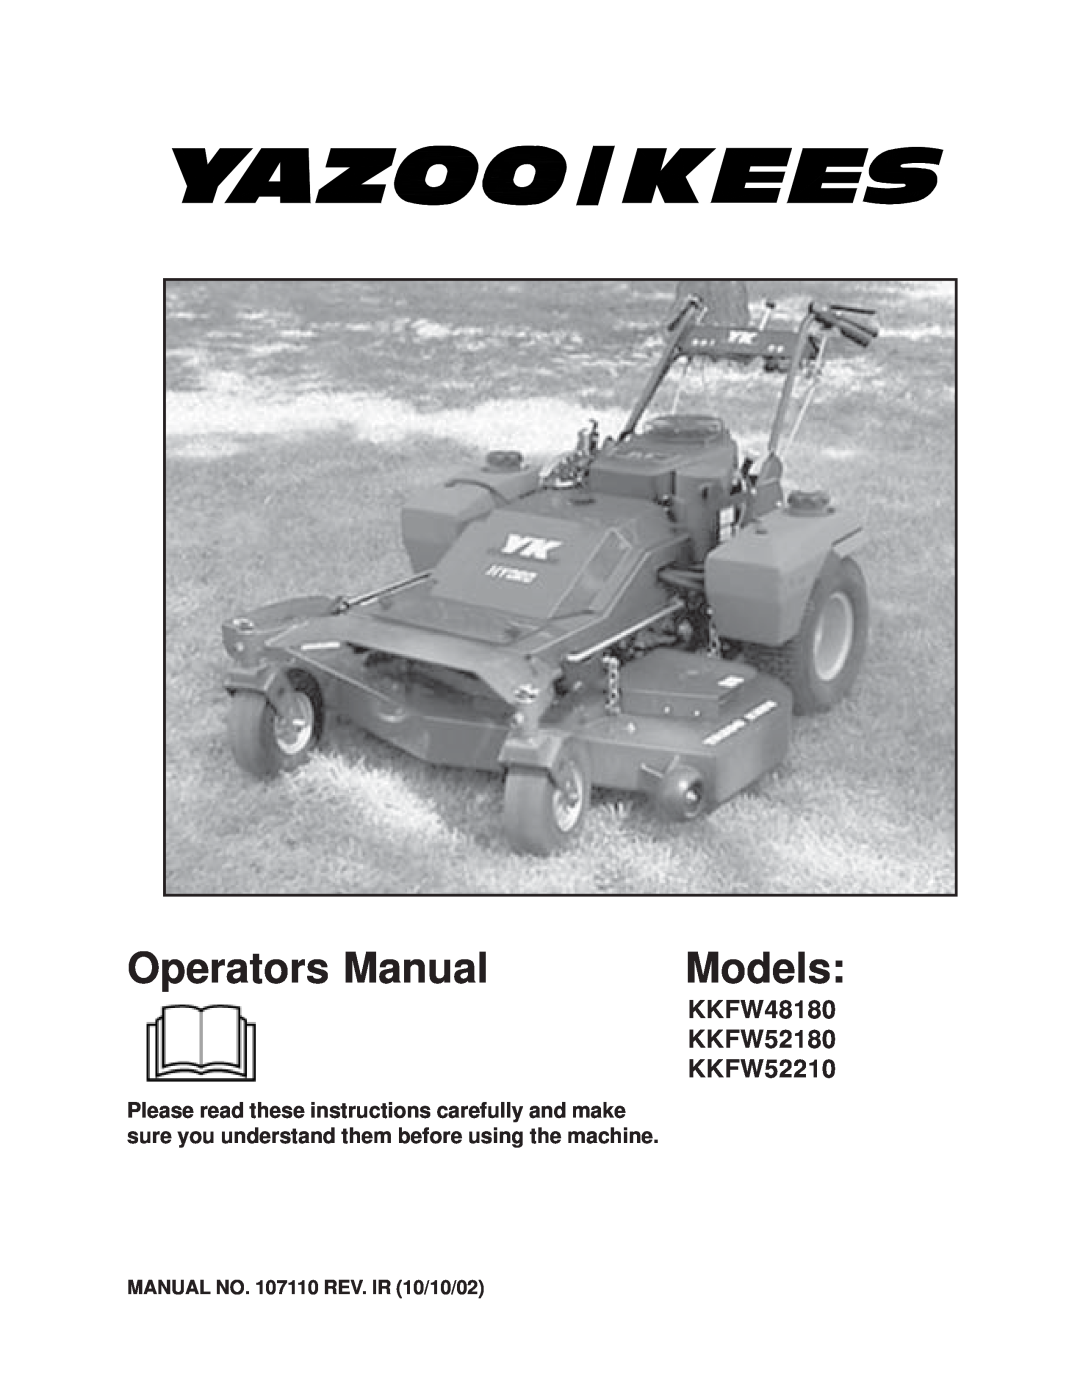 Yazoo/Kees KKFW48180, KKFW52180, KKFW52210 manual Operators Manual, Models, MANUAL NO. 107110 REV. IR 10/10/02 